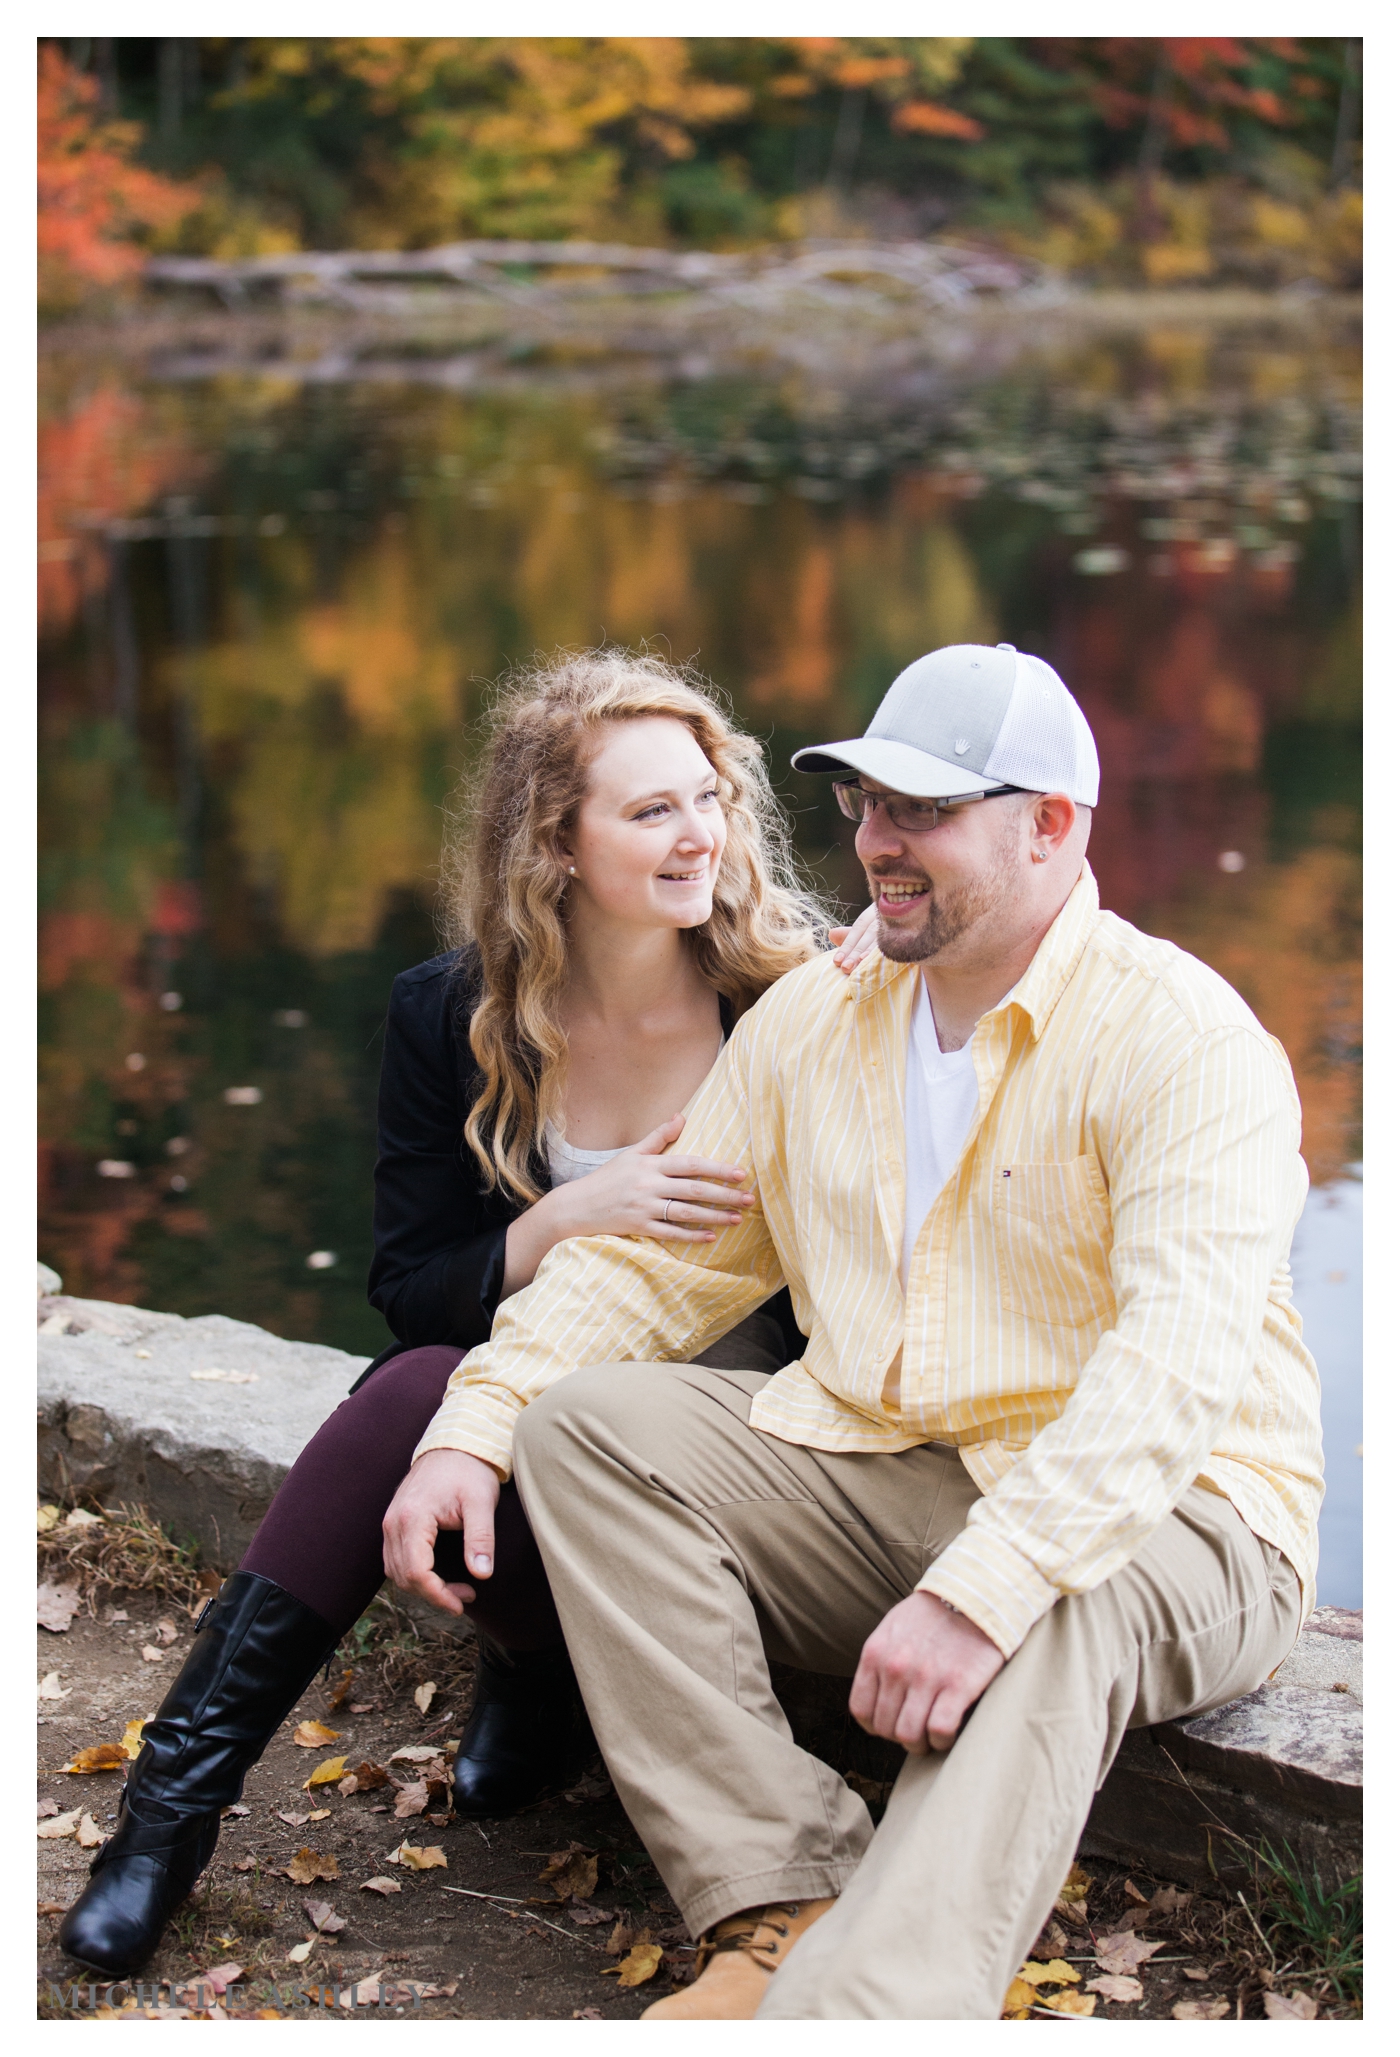 Autumn Engagement Photographer | Keira + Nick | Michele Ashley Photography